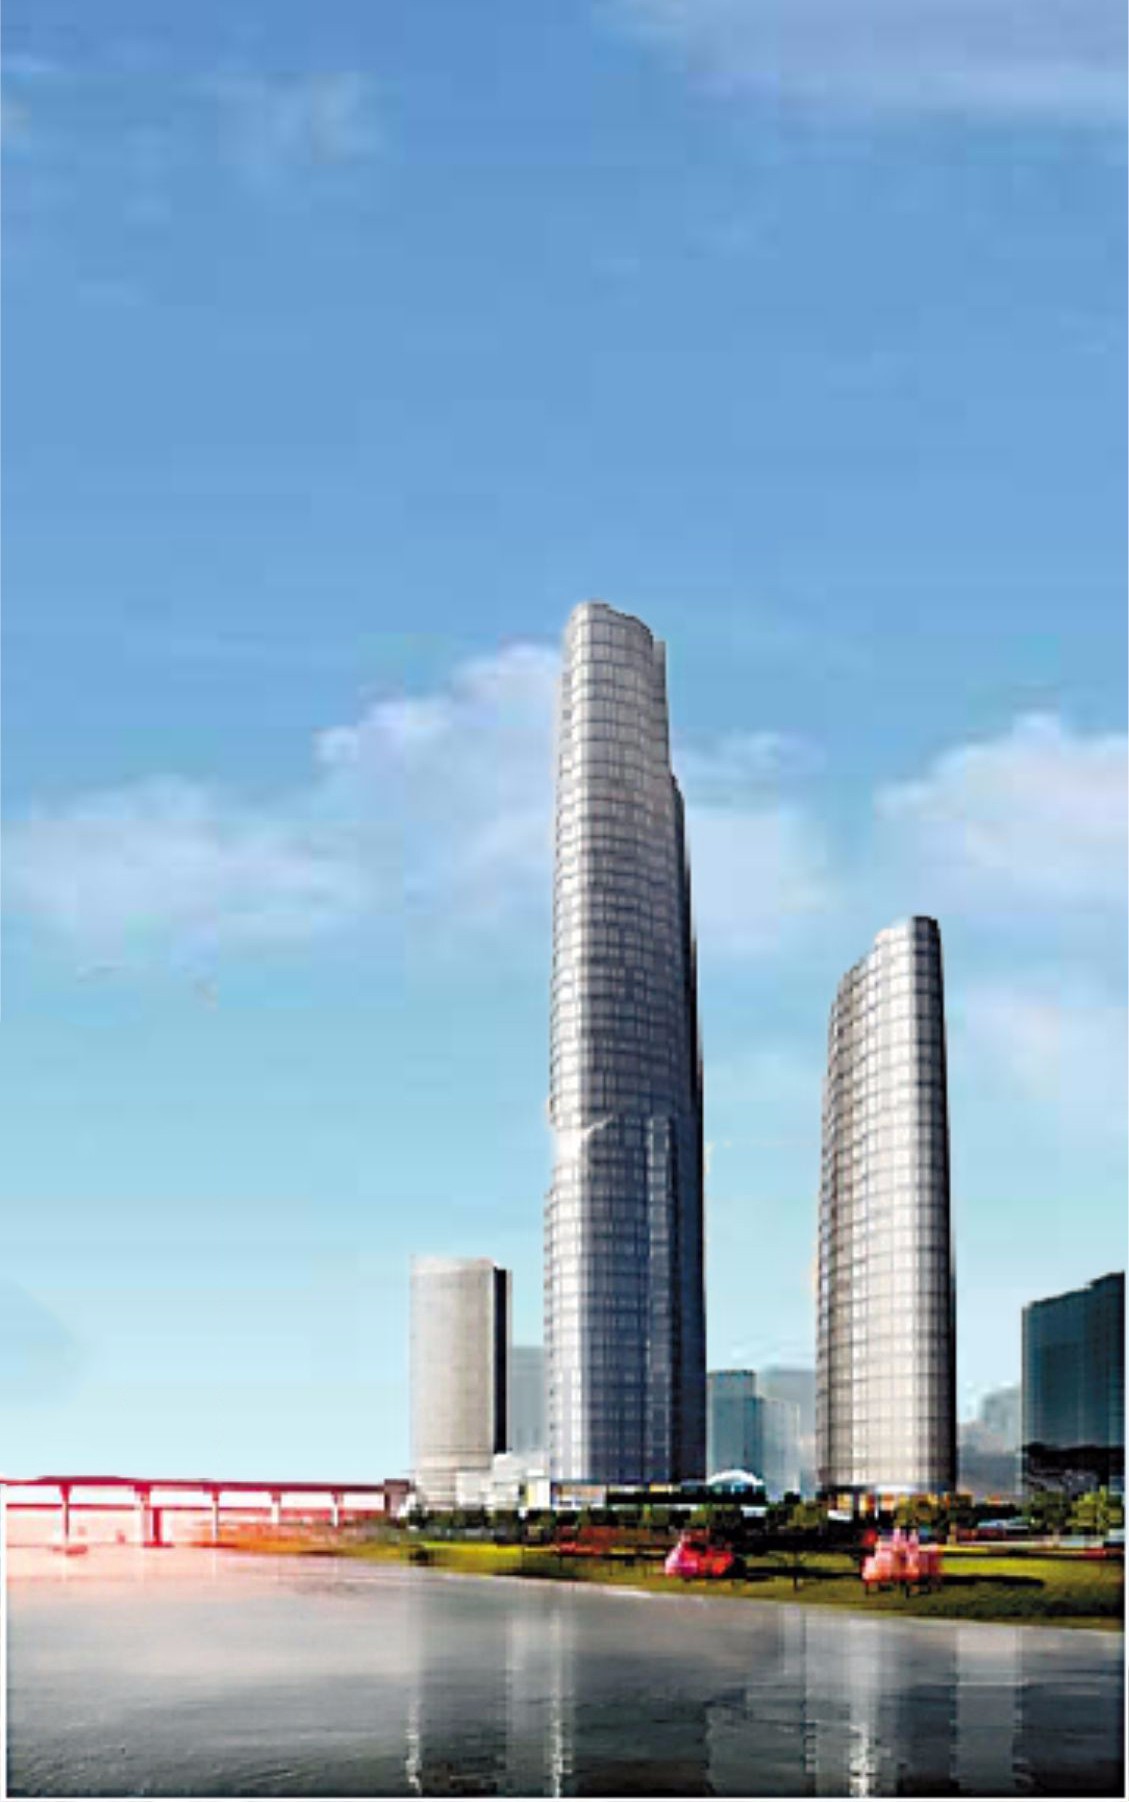 重庆新地标,又一张城市名片1与2008年规划的468米高度不同,此次复工的